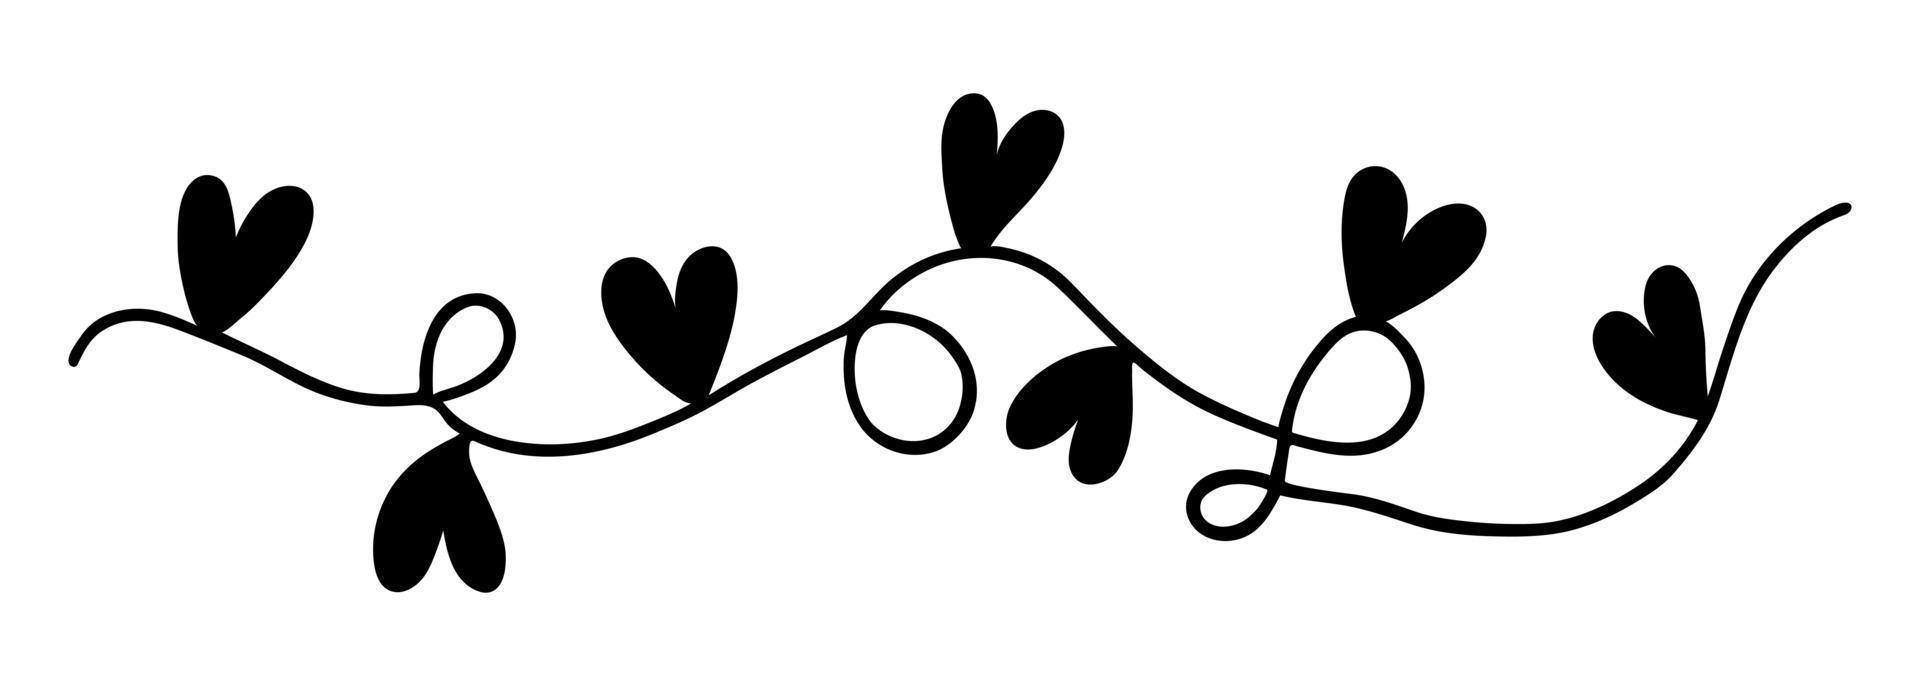 guirlande festive avec des coeurs. icône de vecteur simple. doodle dessiné à la main isolé sur blanc. ruban avec des drapeaux. symbole d'amour, de romance, de sentiments. clipart simple pour la saint valentin. pour cartes, affiches, web